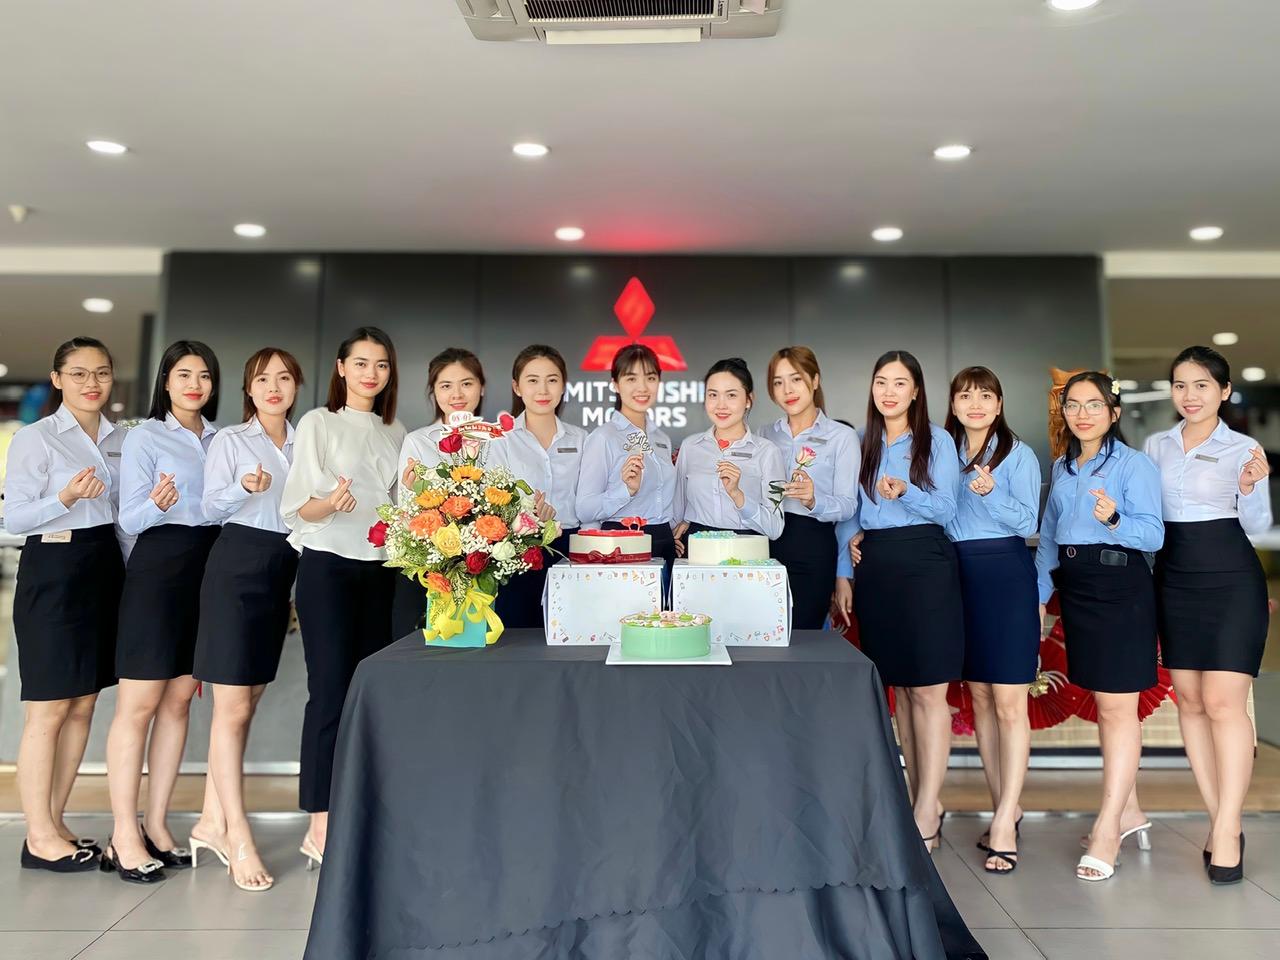 Latest Công Ty TNHH Ô Tô Bắc Quang employment/hiring with high salary & attractive benefits